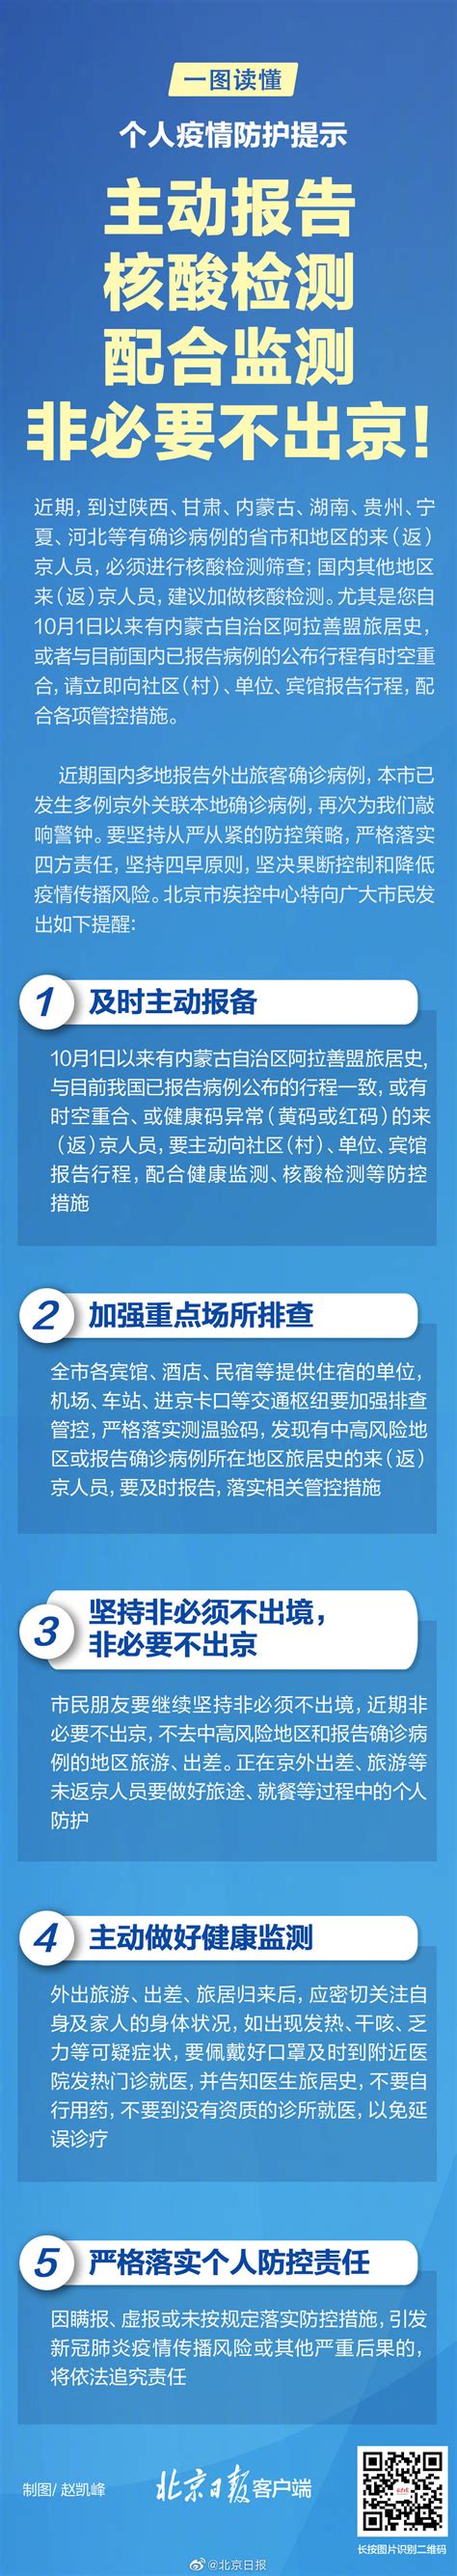 12月21日深圳疫情最新消息 新增3例境外输入无症状感染者- 深圳本地宝